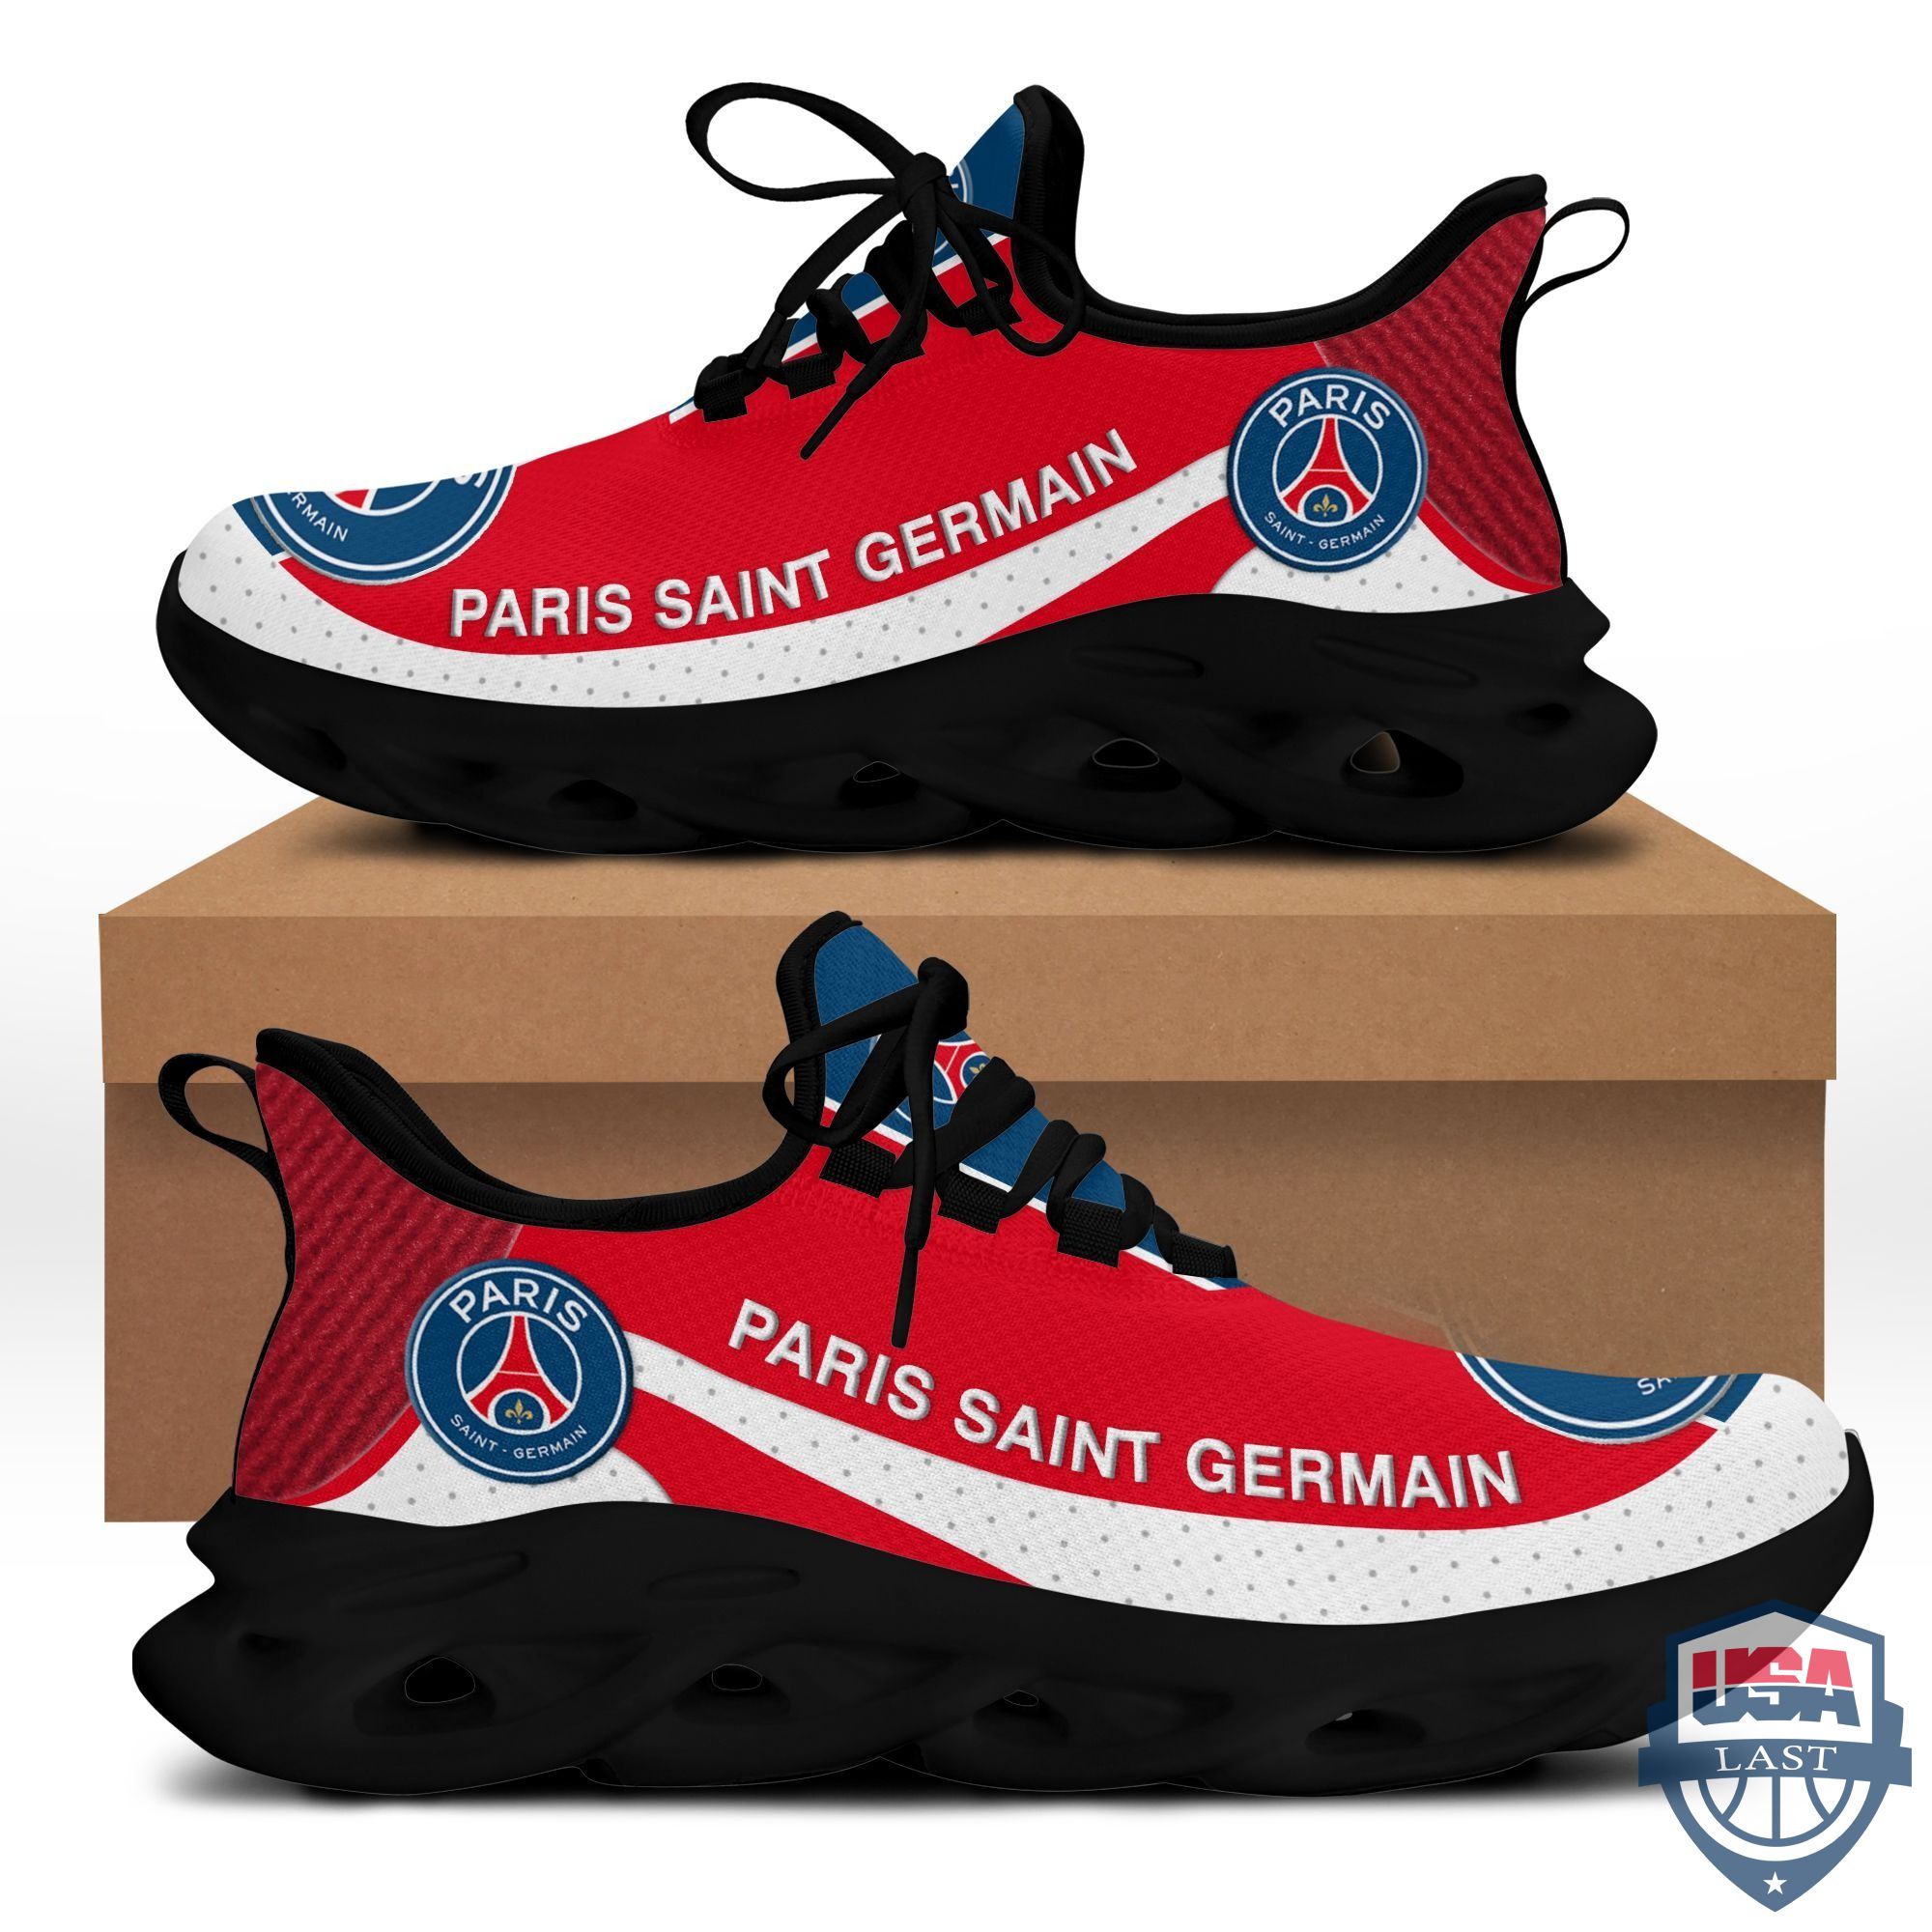 Paris Saint Germain Max Soul Shoes Red Version For Men, Women